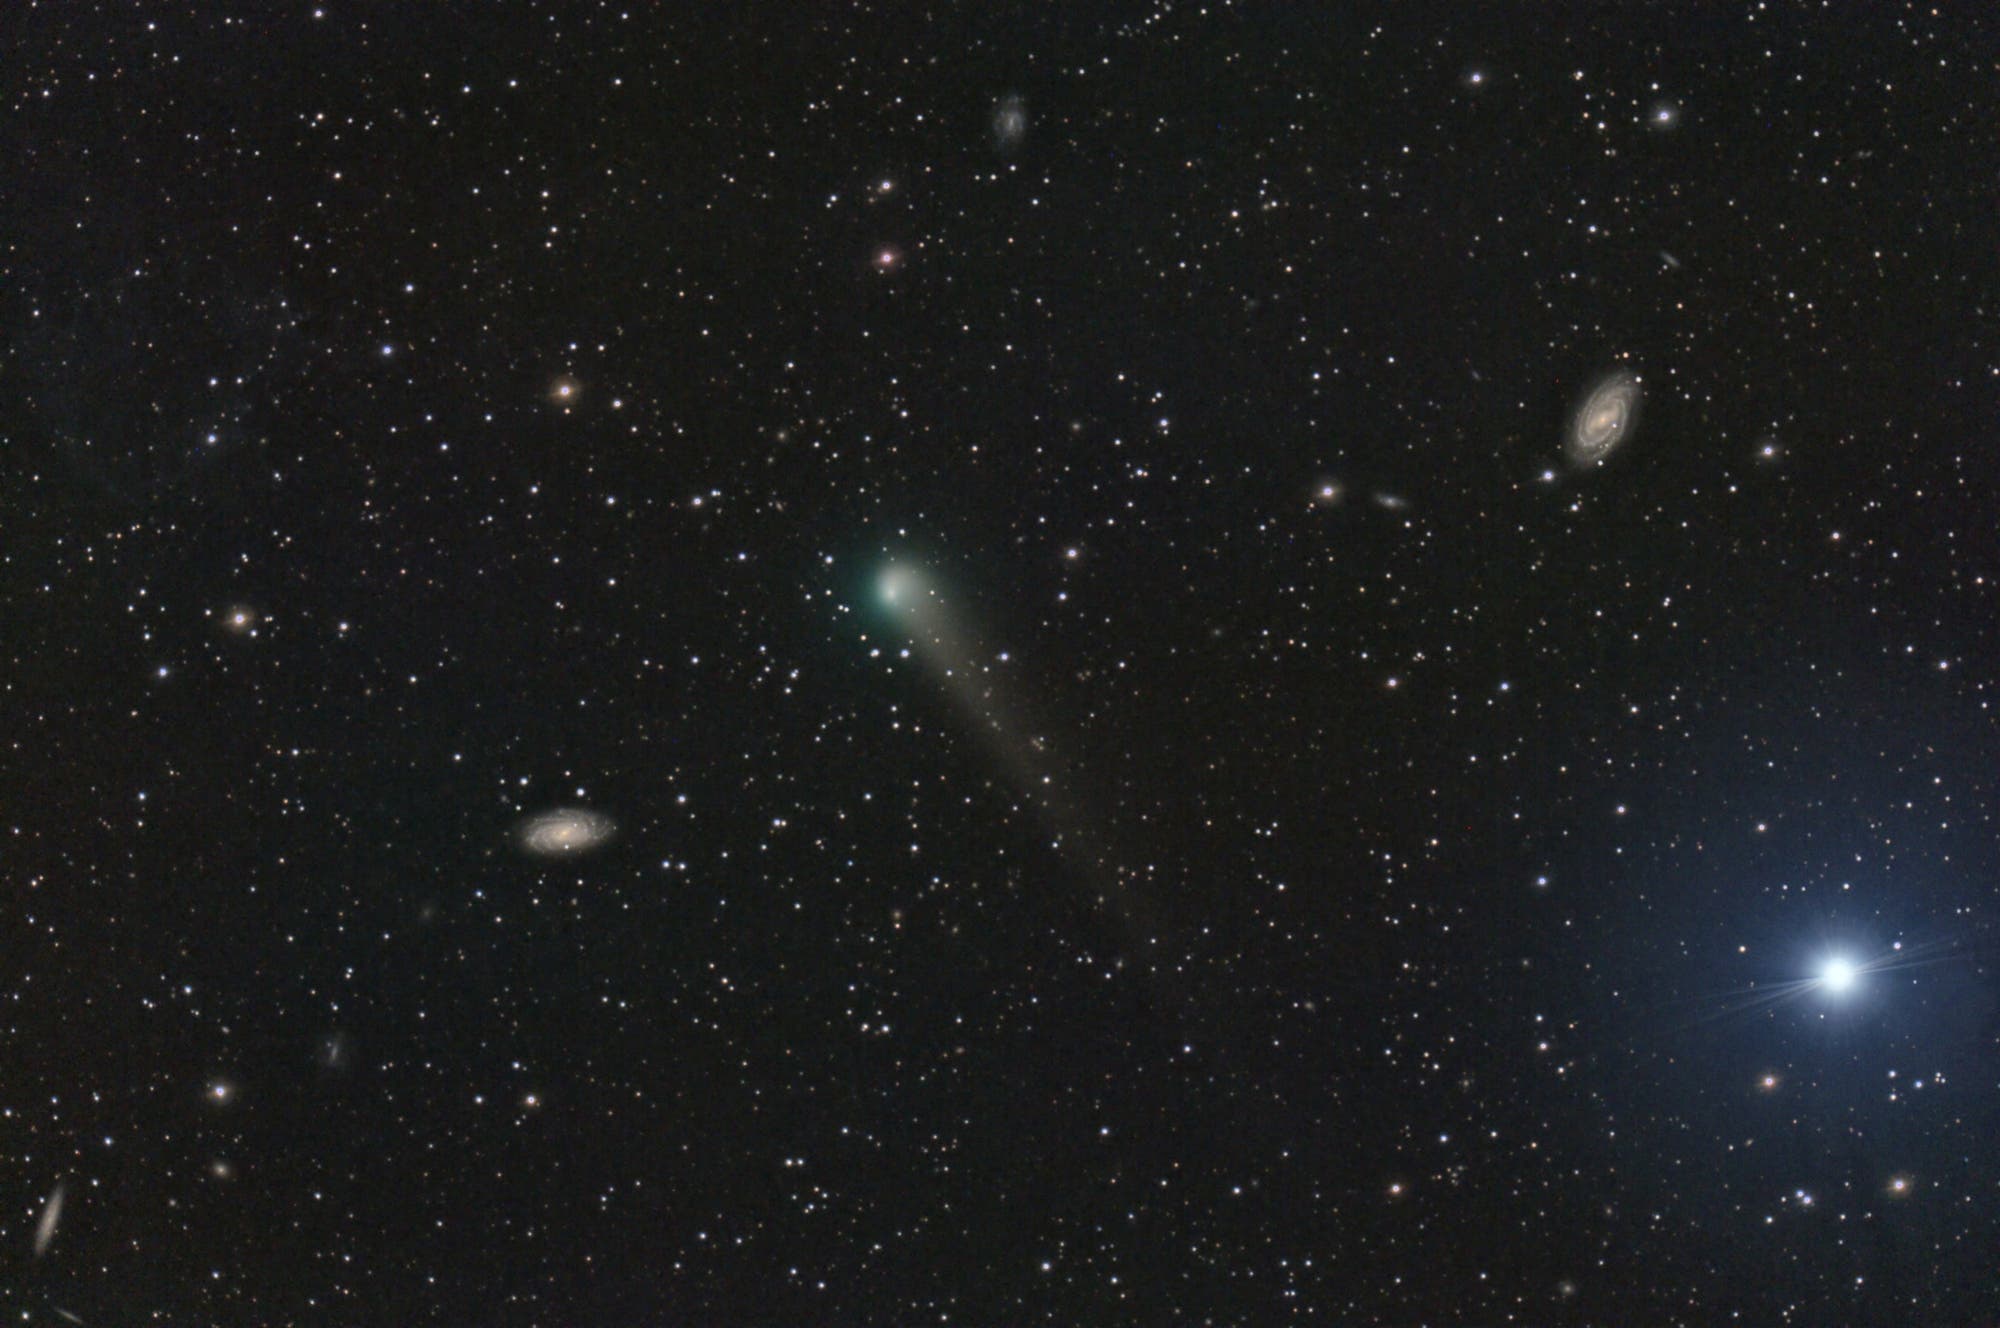 Comet C/2017 T2 PANSTARRS between galaxies